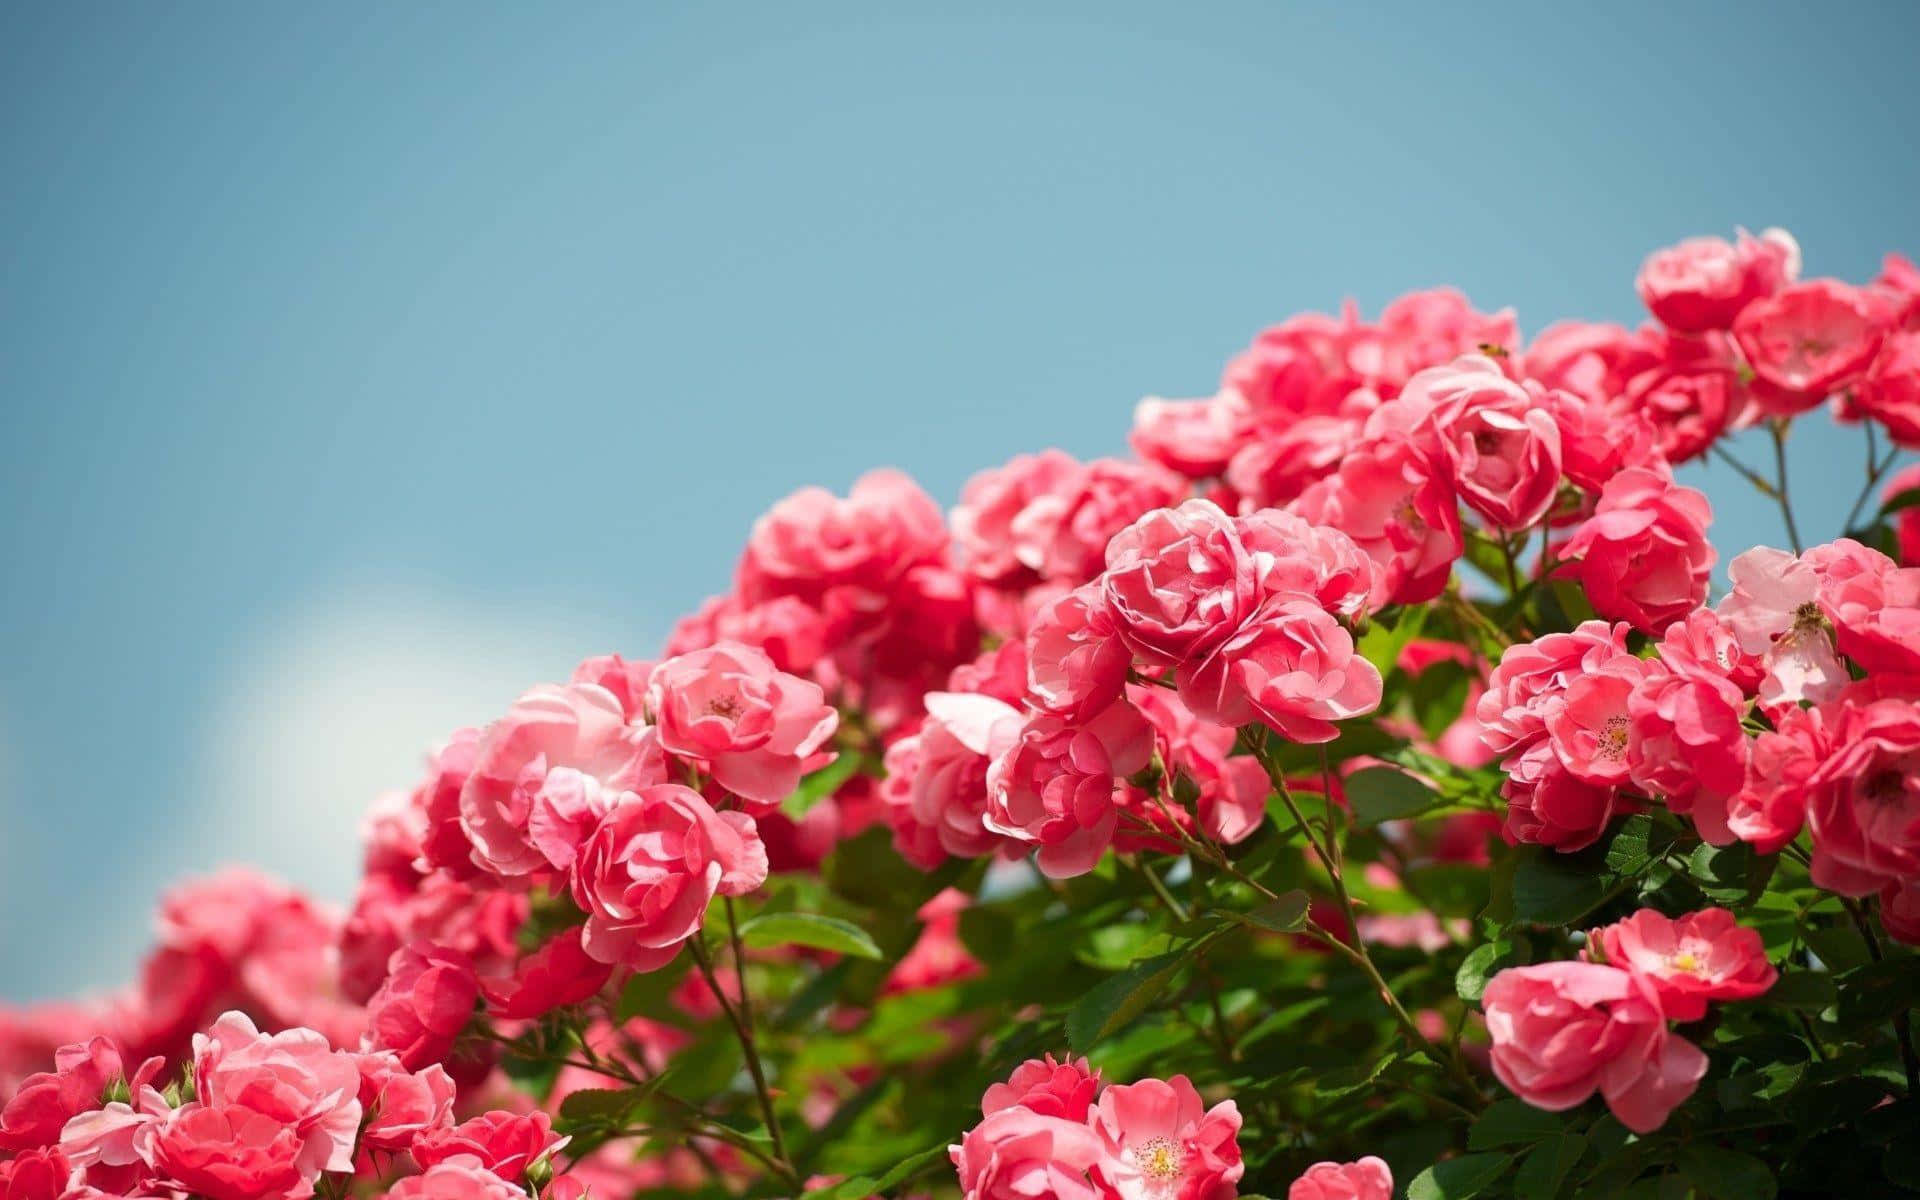 Stunning array of garden roses in full bloom